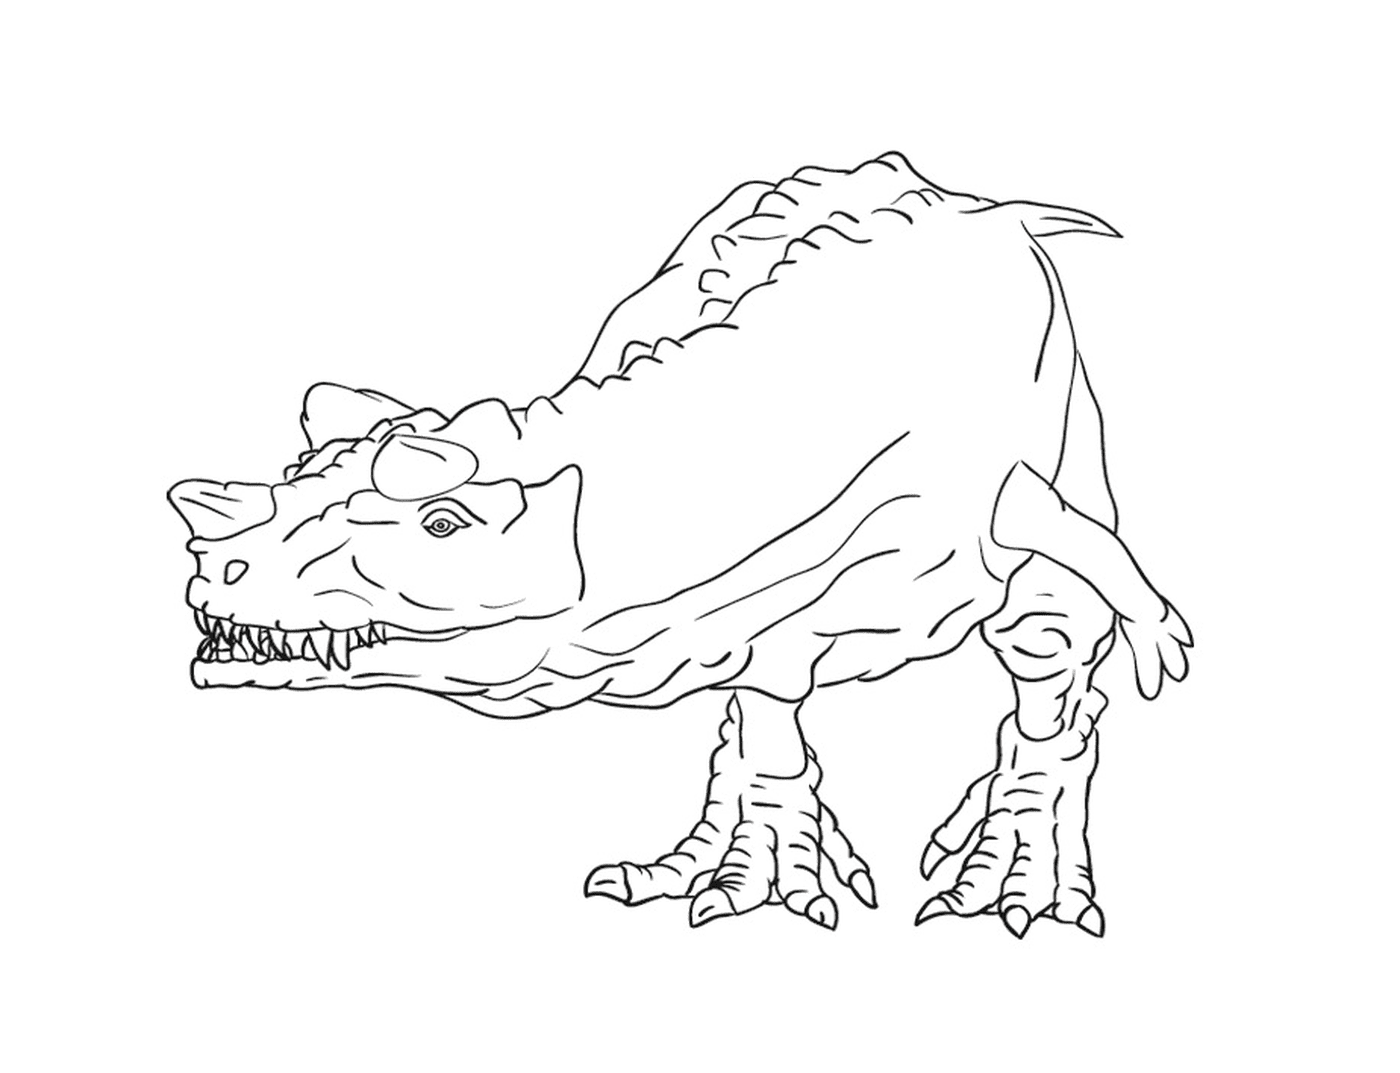  Рисунок аккуратного и детального динозавра 